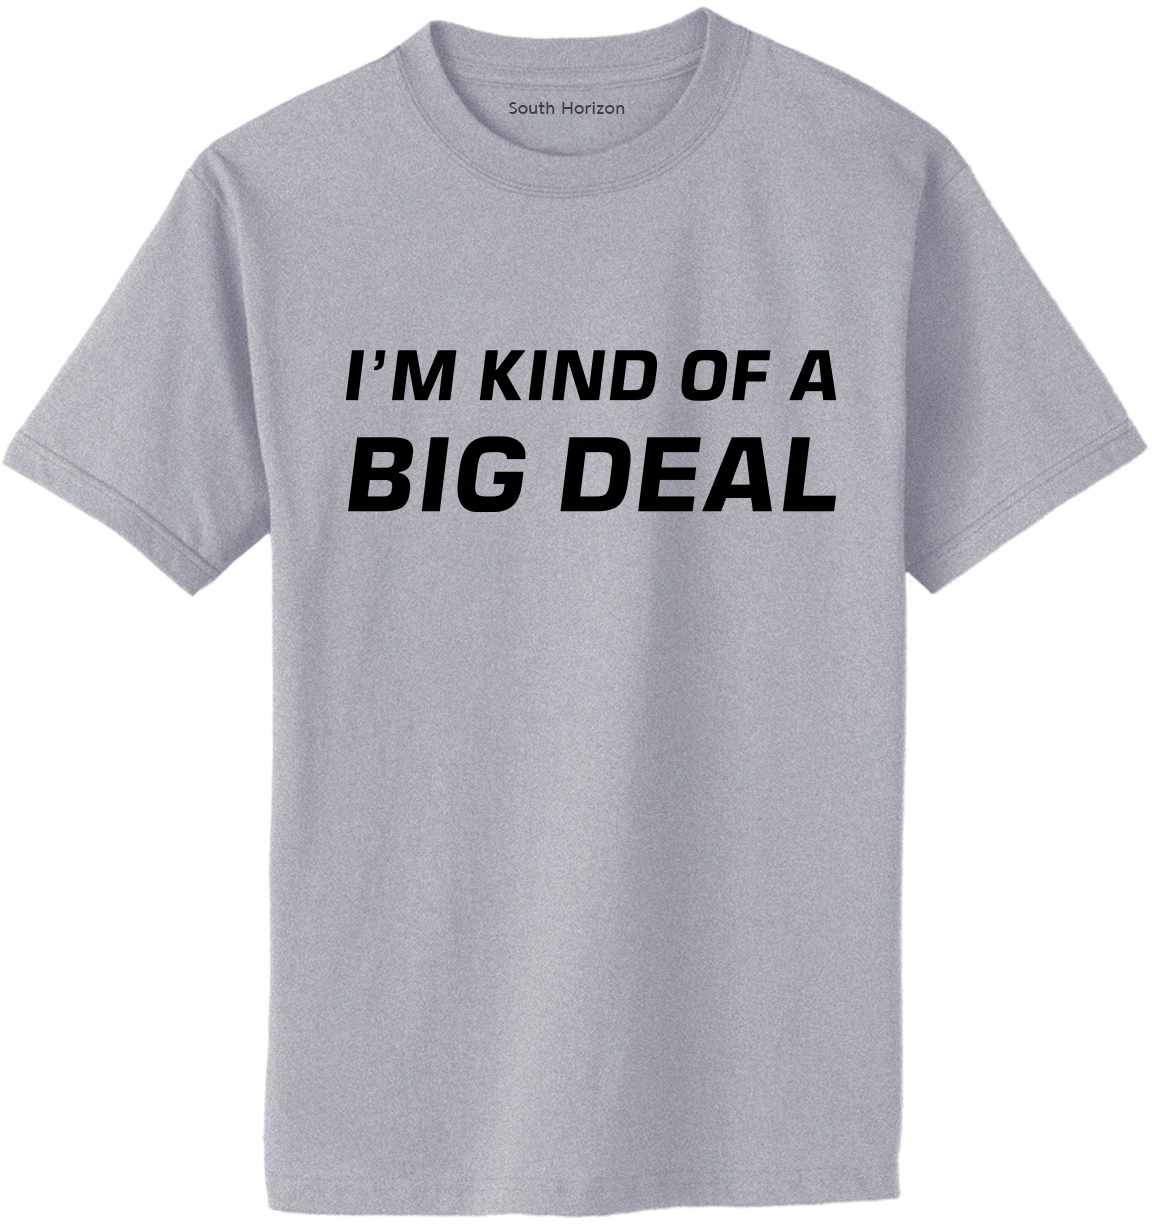 I'm Kind of a Big Deal Adult T-Shirt